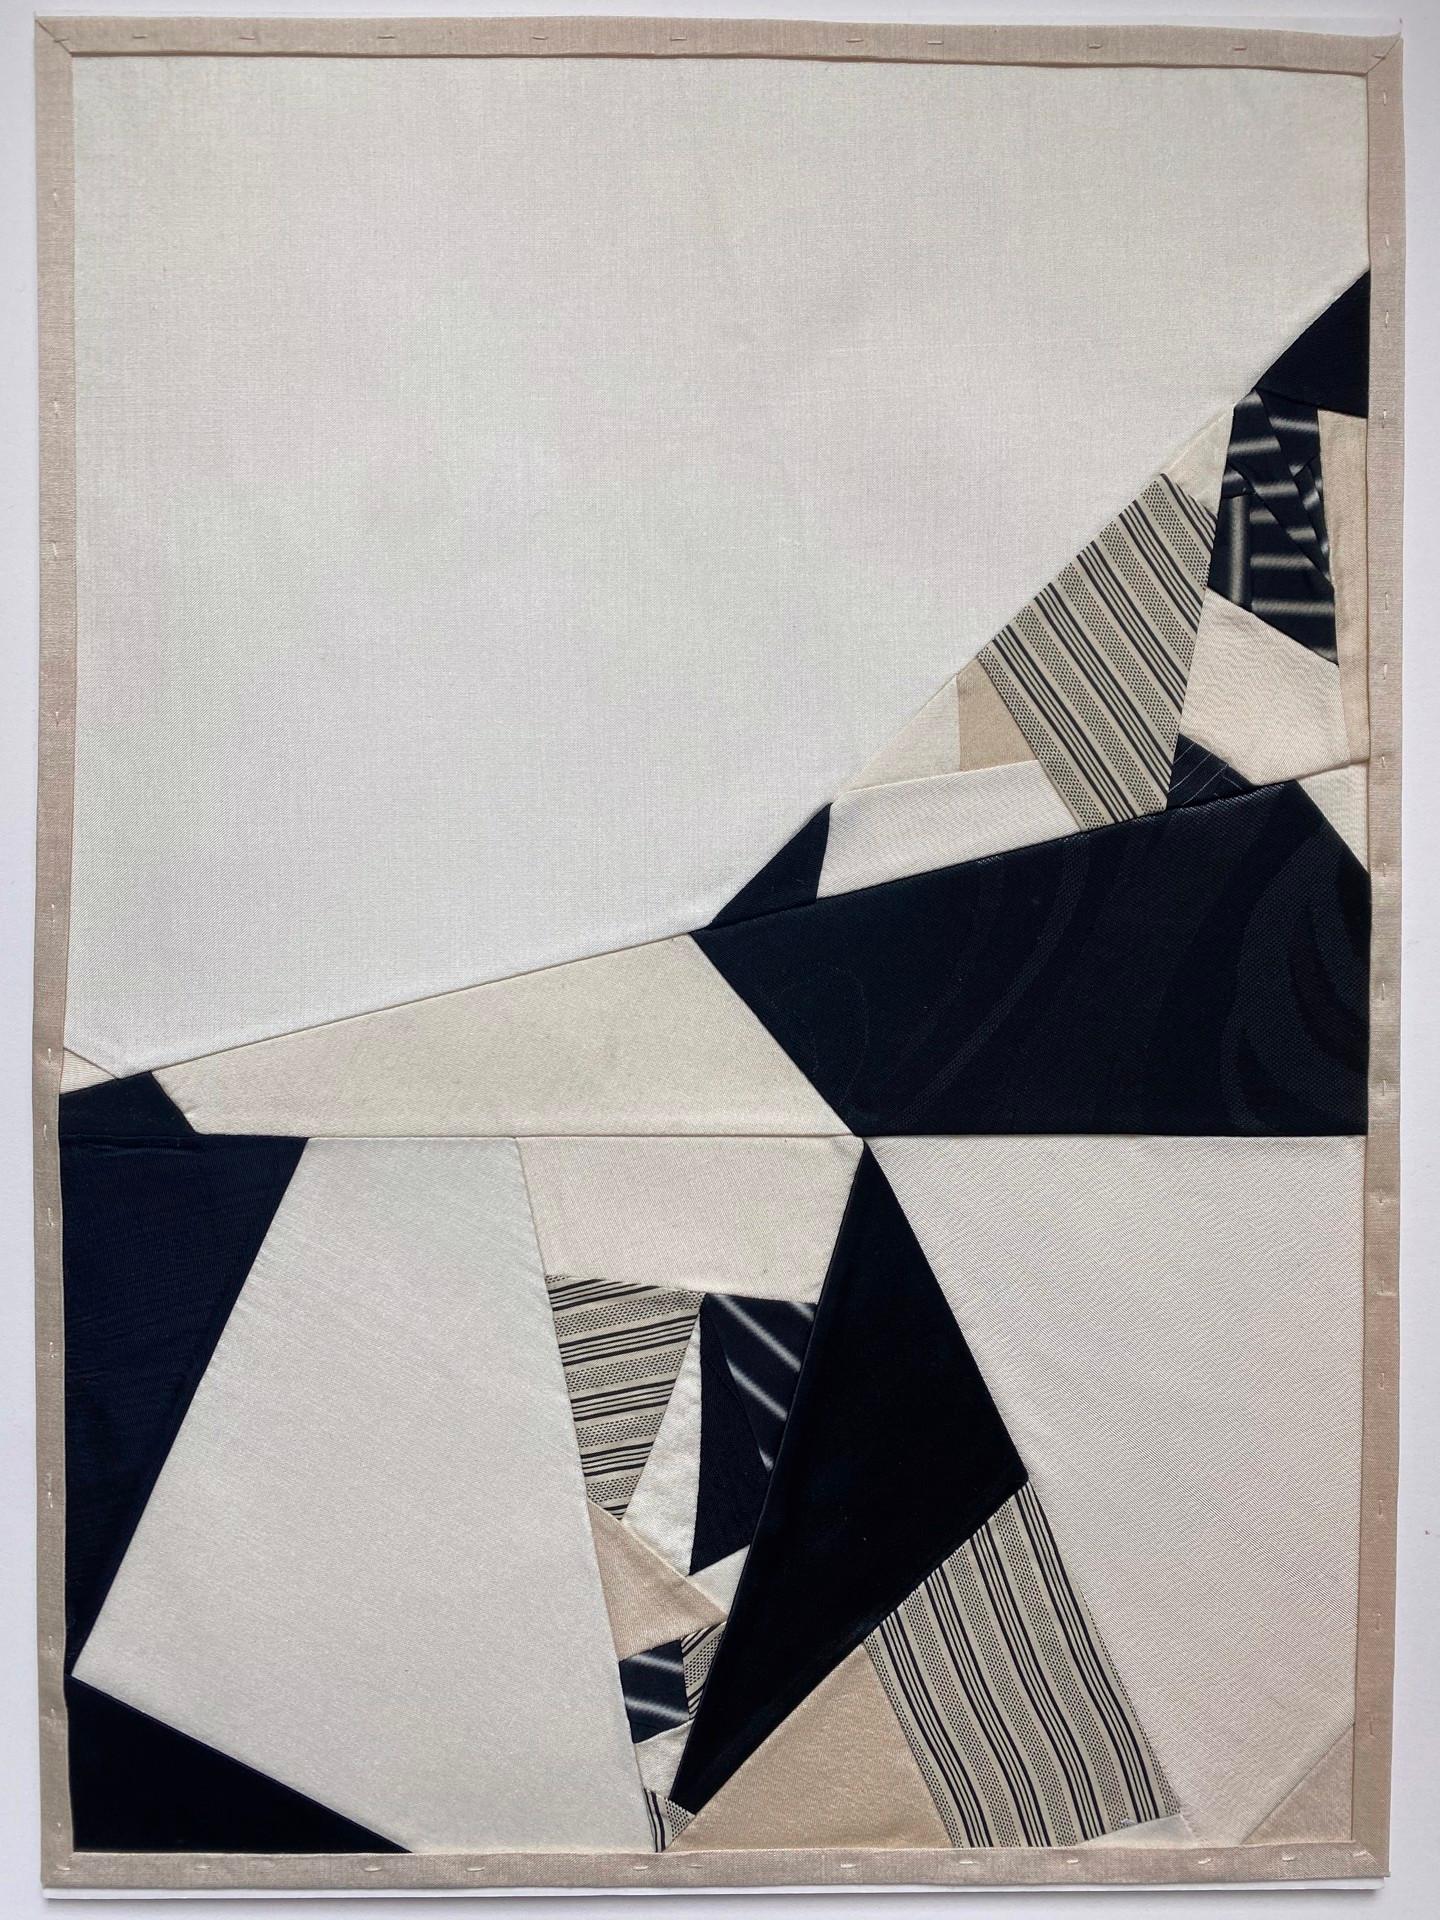 Les collages de tissus de Fabrice Smith sont comme des bribes de quilts contemporains. Elle recycle des tissus, tels que les doublures en soie d'anciens kimonos japonais, qu'elle utilise pour réaliser une grande partie de son travail actuel. Les